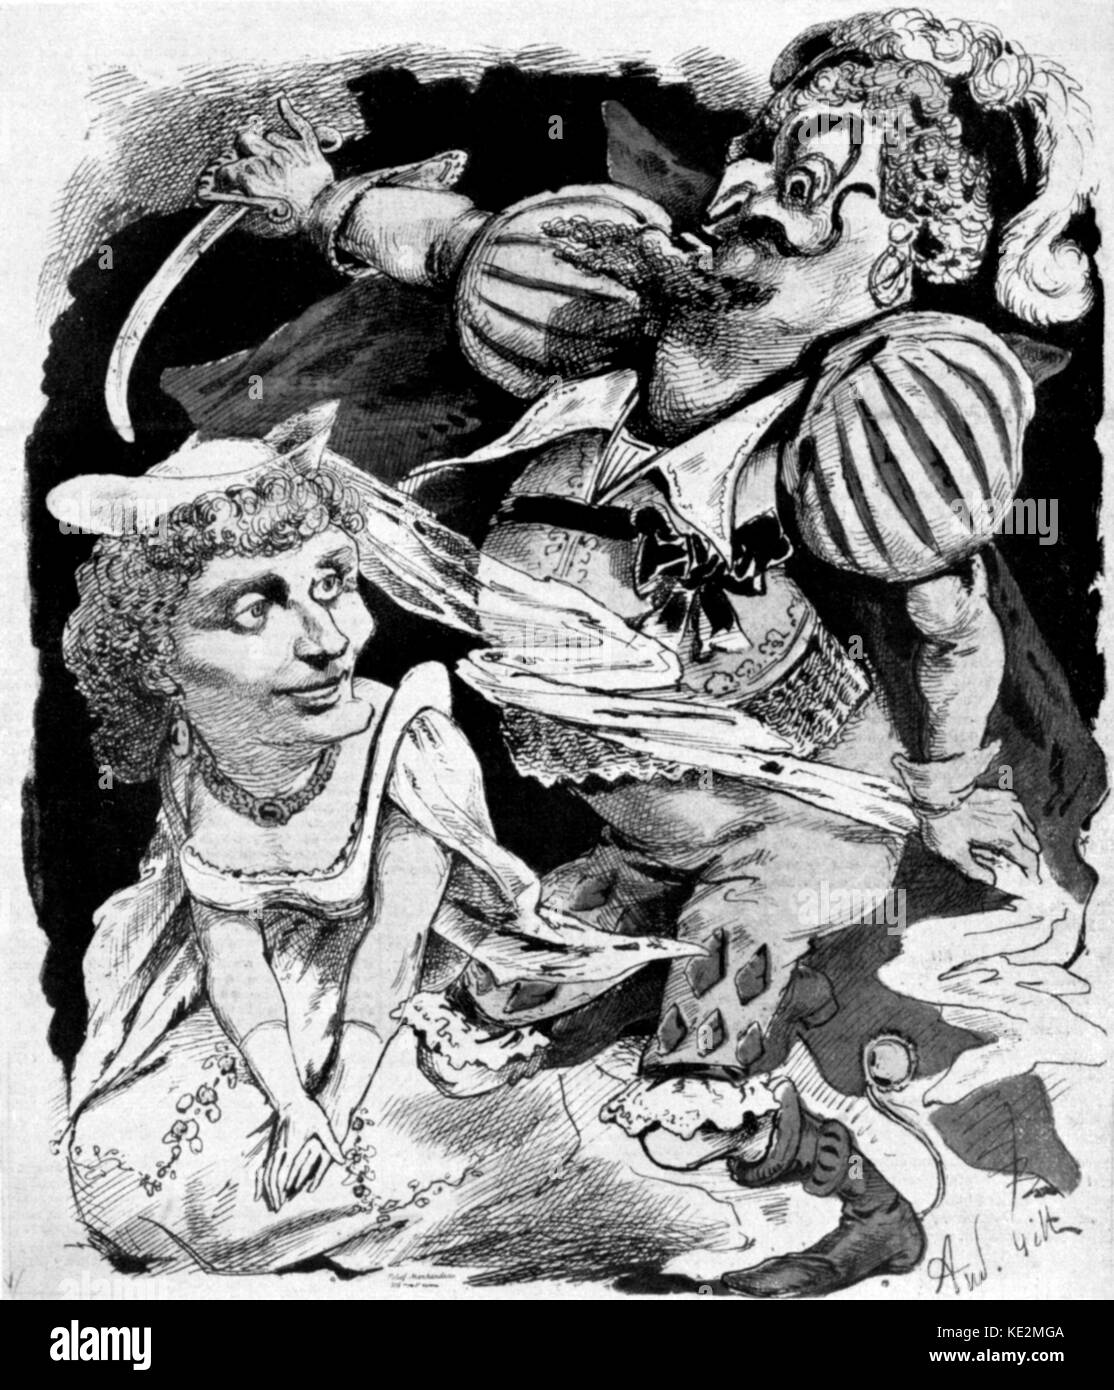 Barbablù / Barbe-Bleue - illustrazione di una scena dall'opera di Jacques Offenbach con Barbablù con una spada in piedi su una donna in ginocchio, 1866. JO: tedesco/compositore francese, 20 Giugno 1819 - 5 ottobre 1880. Foto Stock